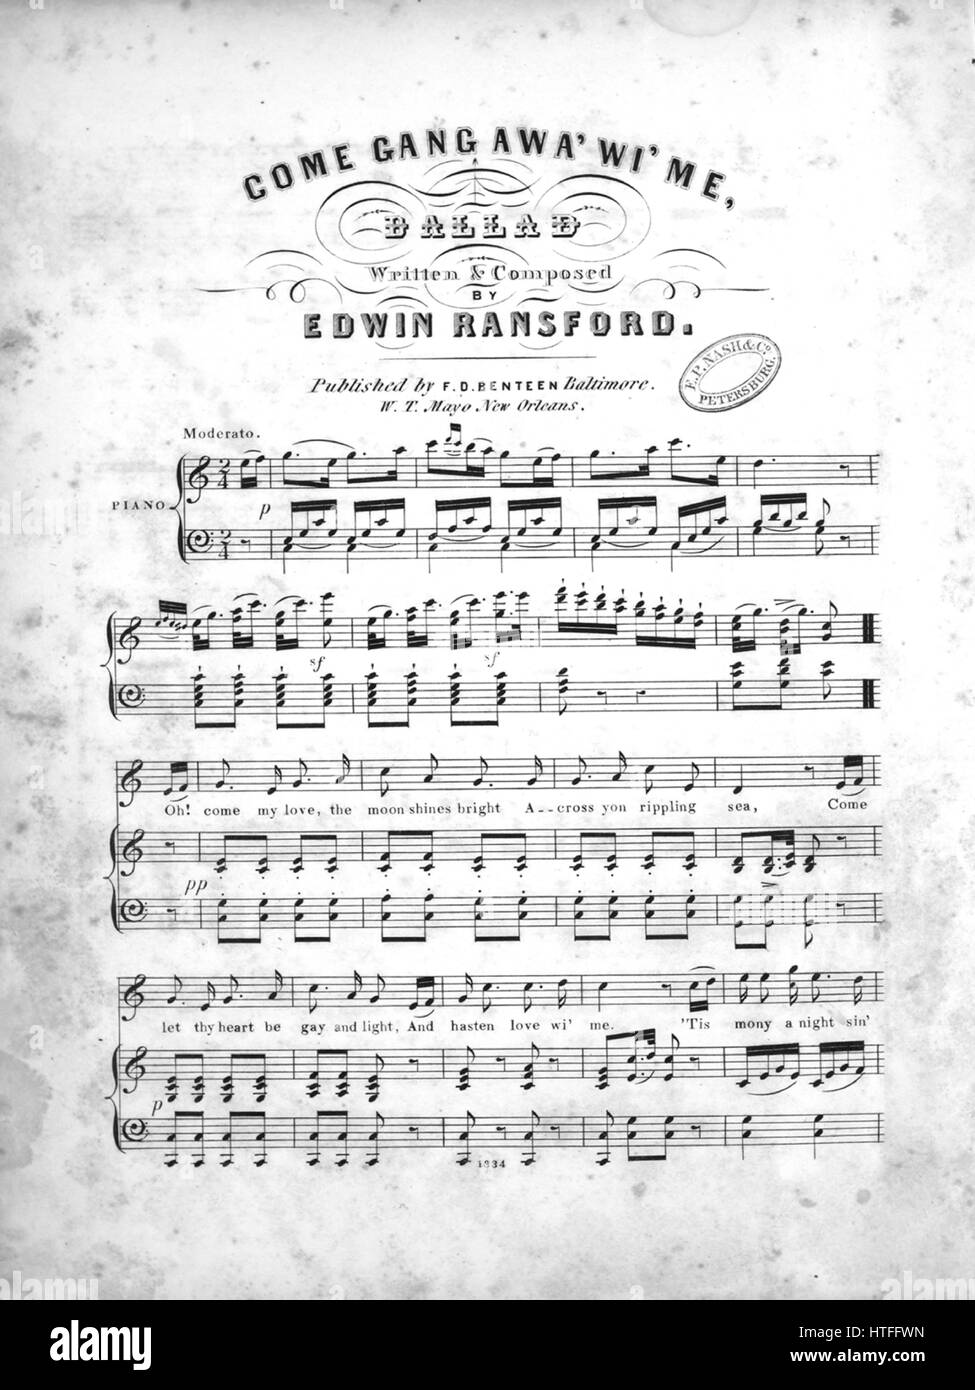 Sheet Music image de couverture de la chanson 'Gang' Awa Wi' me, Ballad',  avec l'auteur original "Lecture notes écrites et composées par Edwin  Ransford', United States, 1900. L'éditeur est répertorié comme "F.D.